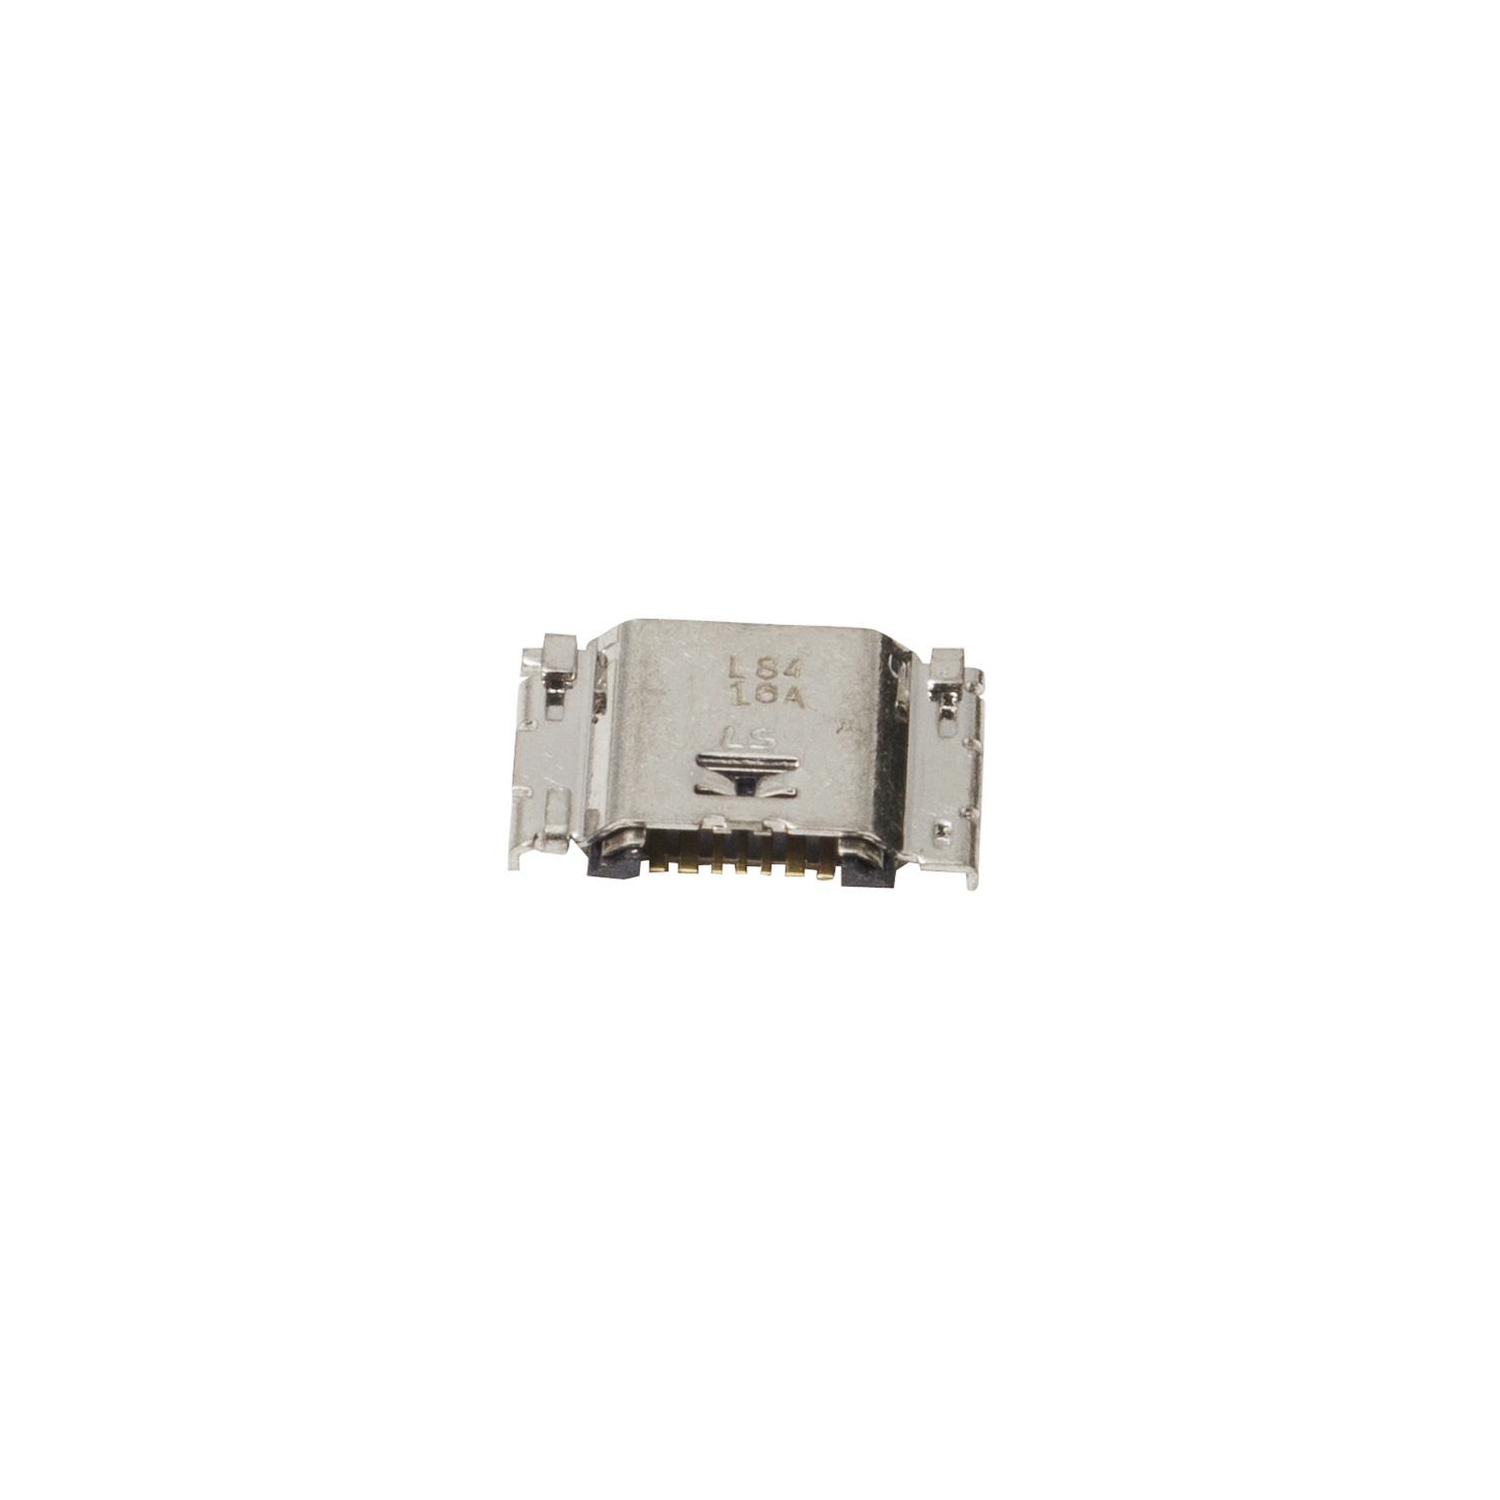 Micro USB Charging Port For Samsung Galaxy J3 (J320/J337) / J1 / J5 / J7 / TAB A 8.0 (2015) / J7PRO / J6 / J8 / A10 /A02